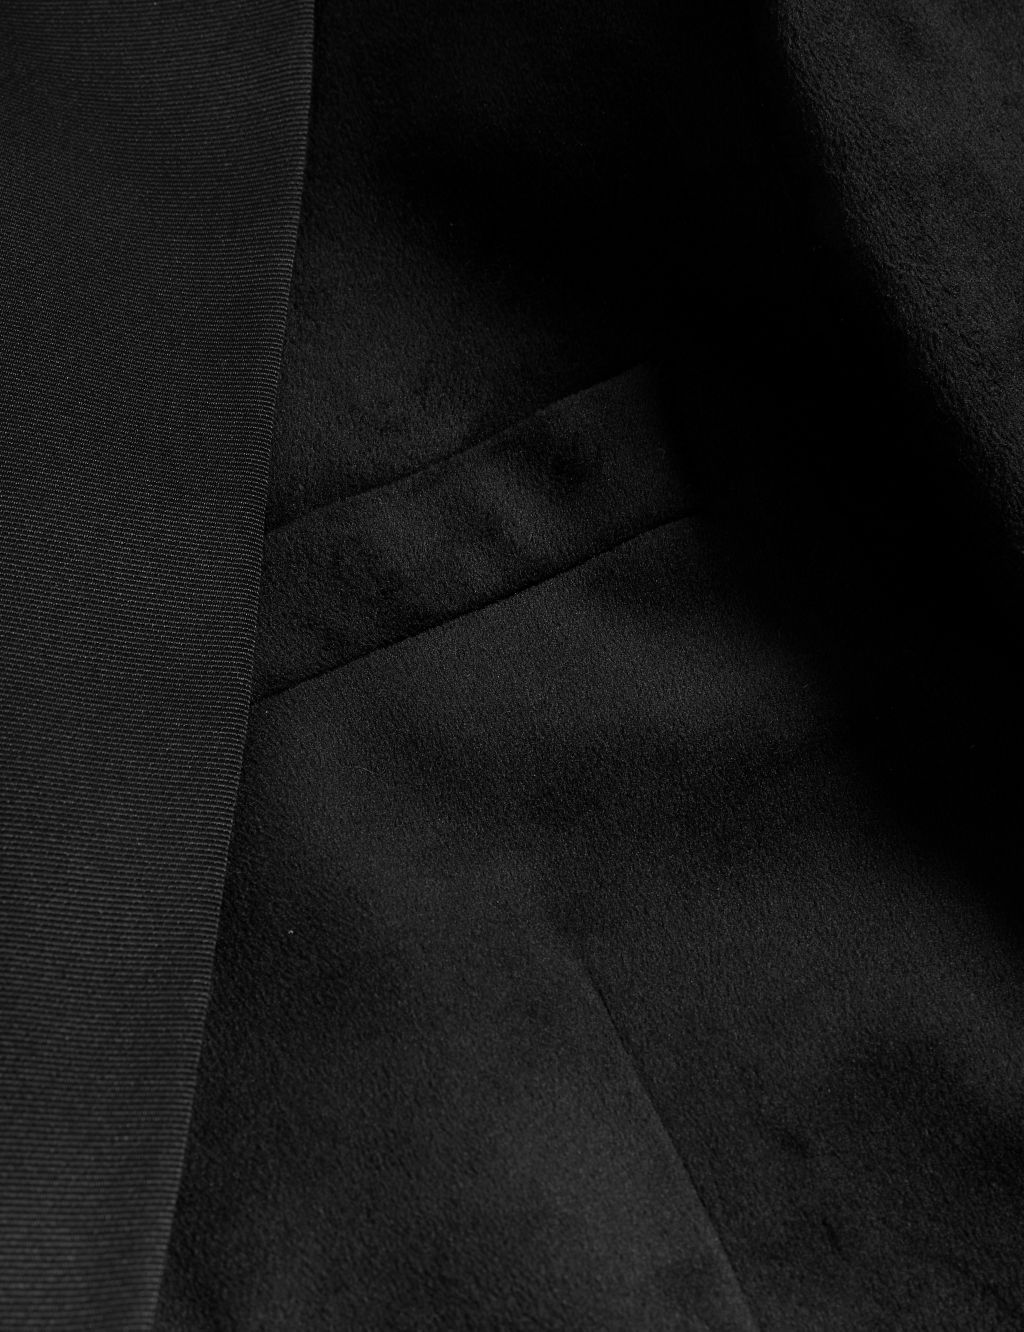 Slim Fit Velvet Tuxedo Jacket image 6